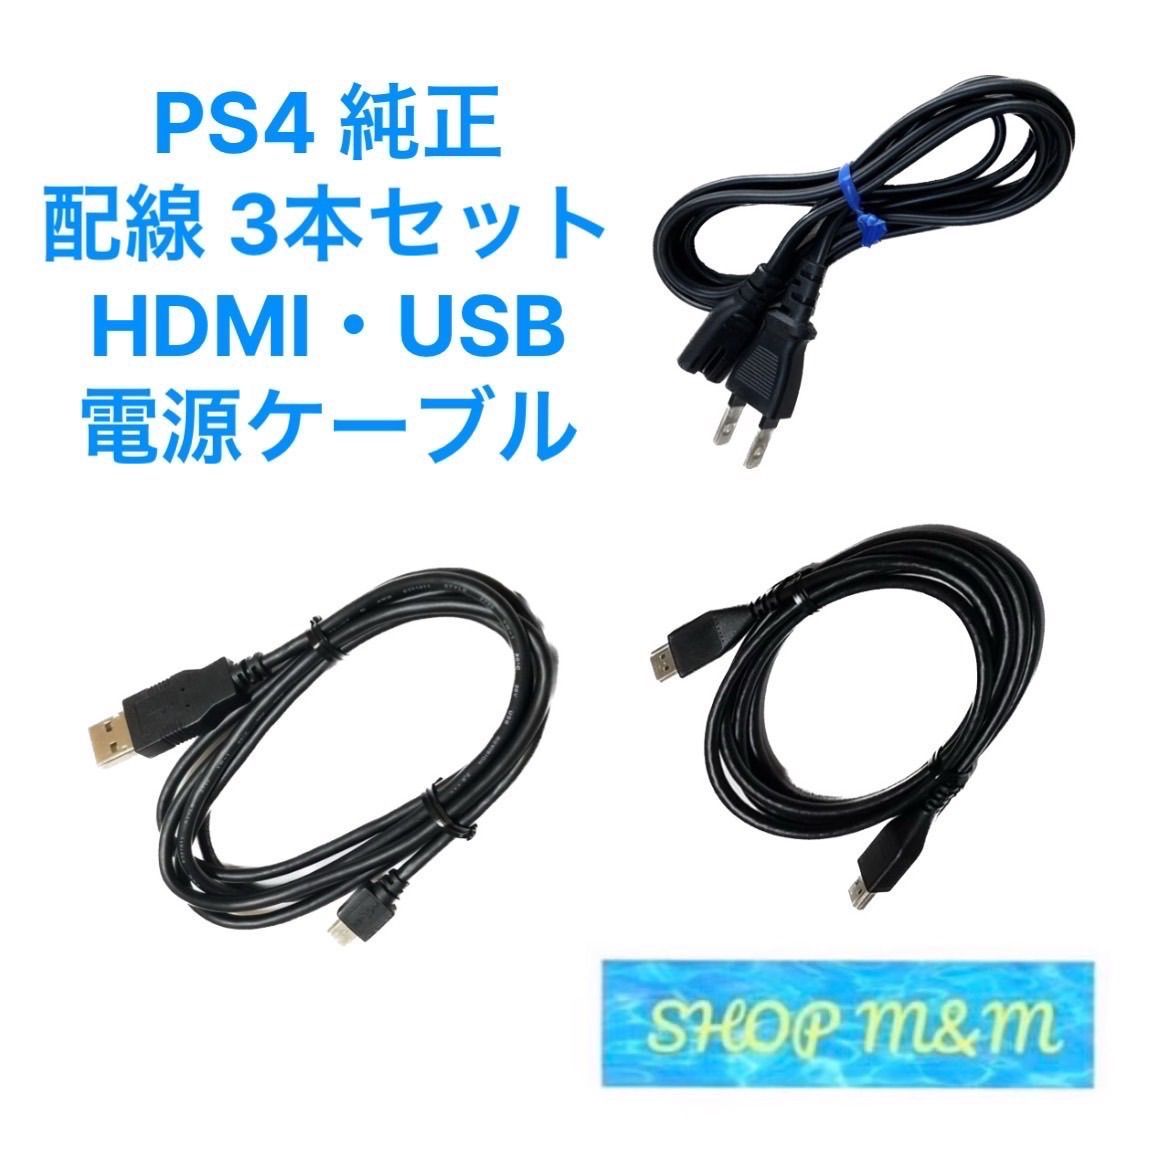 プレステ4 USB 電源コード HDMIコード コントローラーつきます！ - www